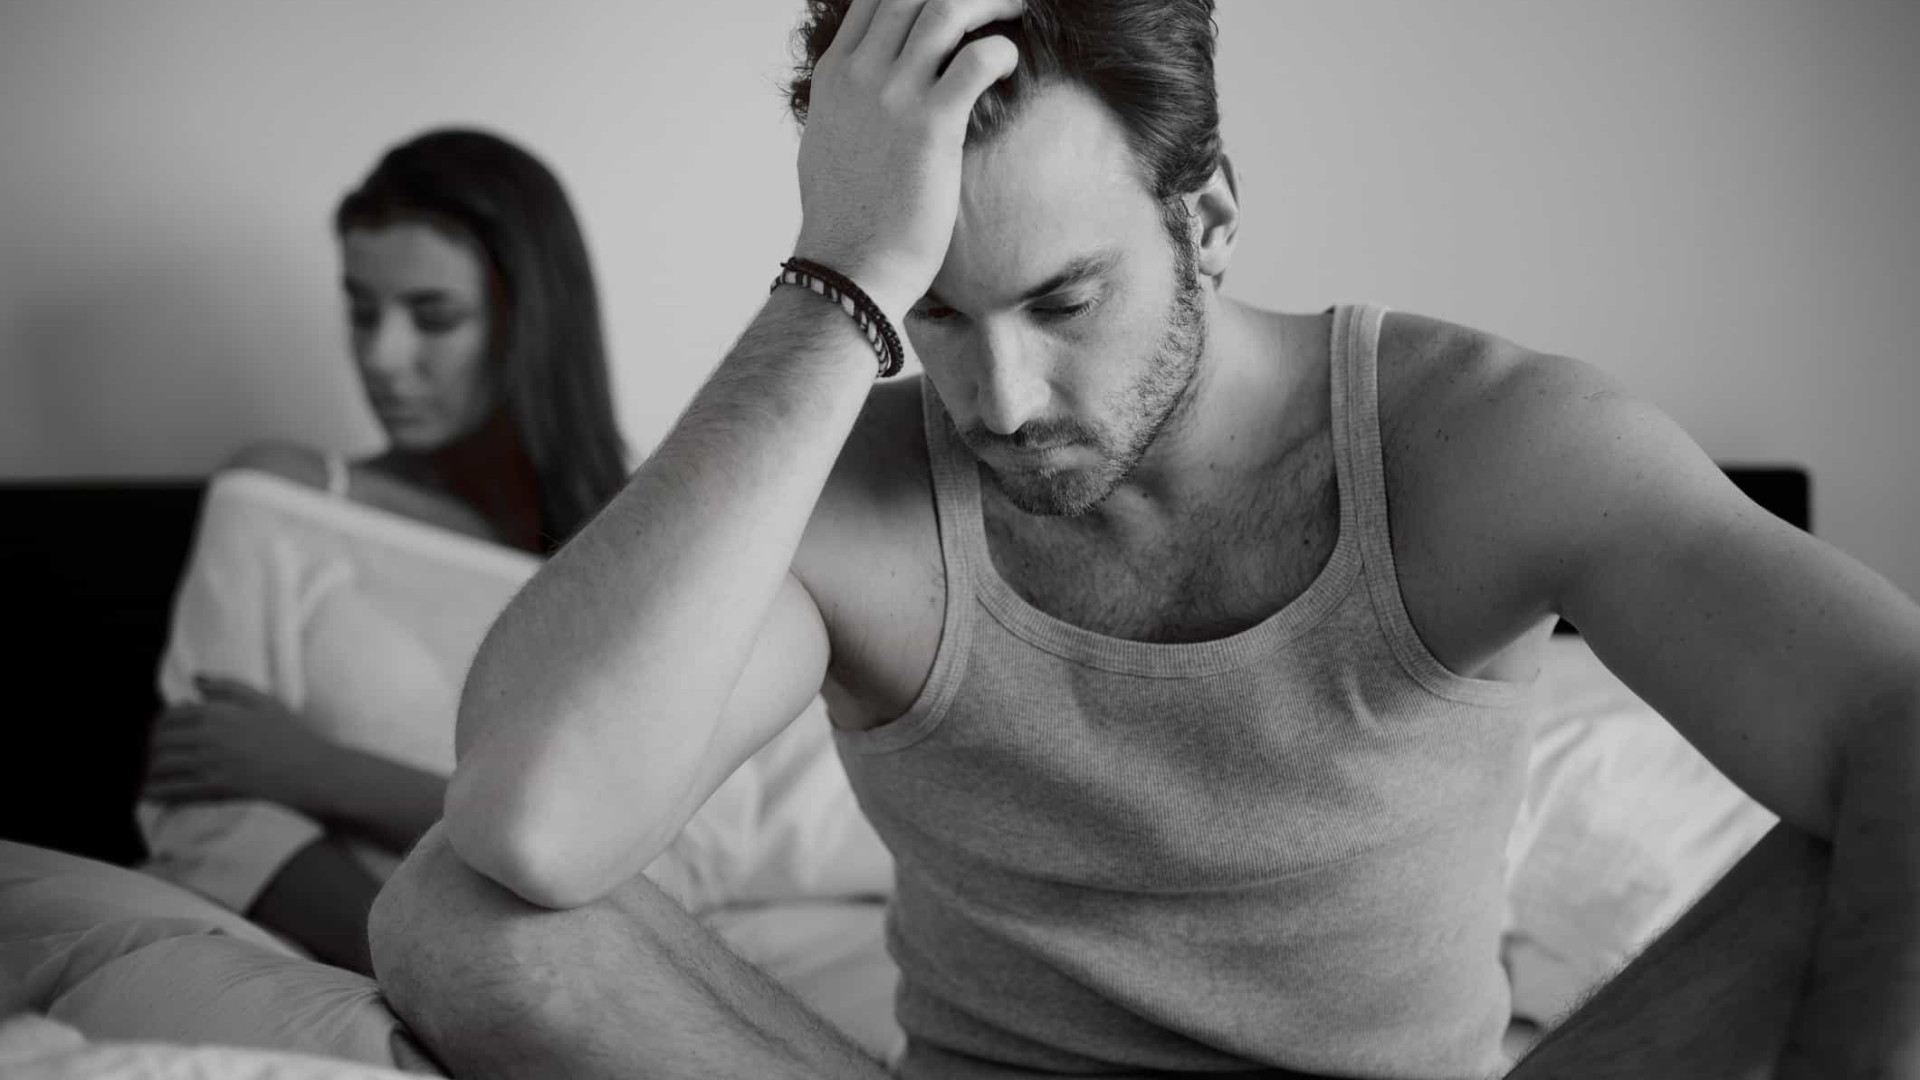 Triste depois do ato sexual? Depressão pós-sexo é mais comum nos homens